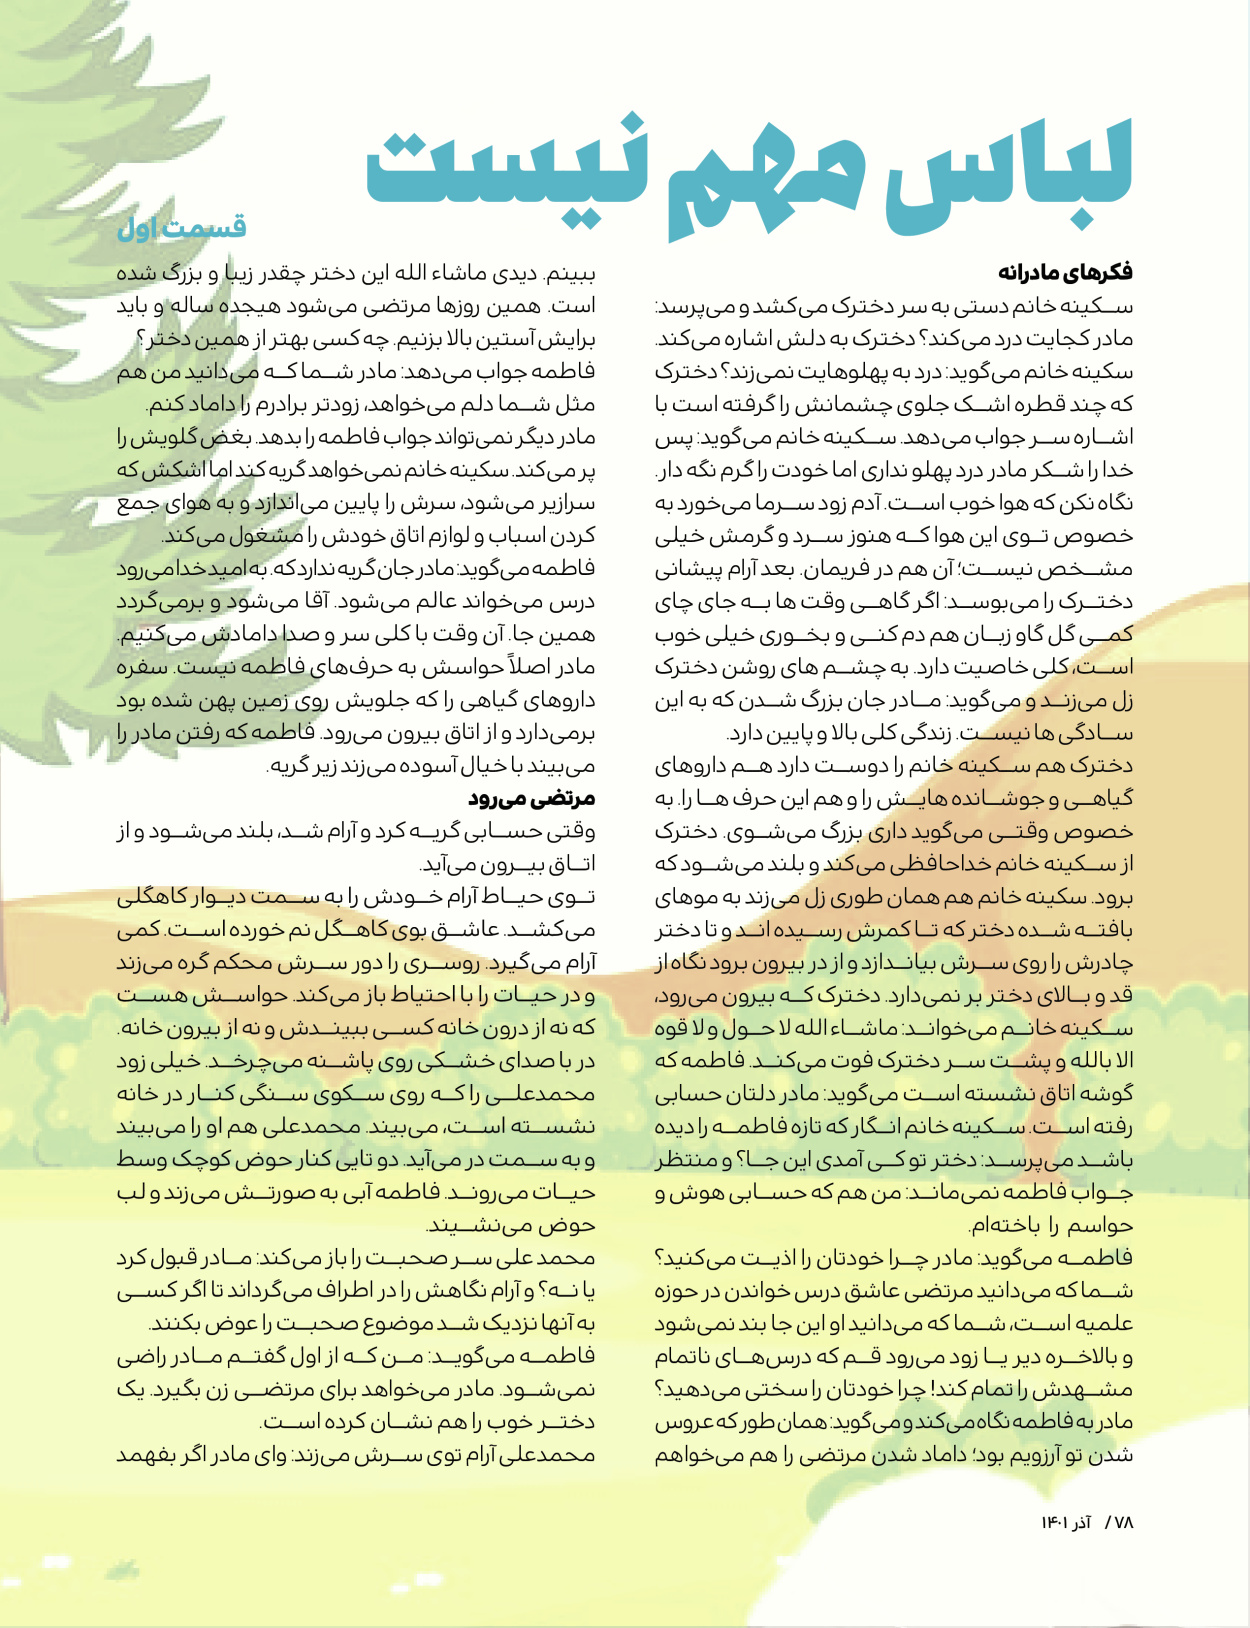 ماه نامه بچه های ایران - شماره یک - ۰۷ شهریور ۱۴۰۲ - صفحه ۷۸